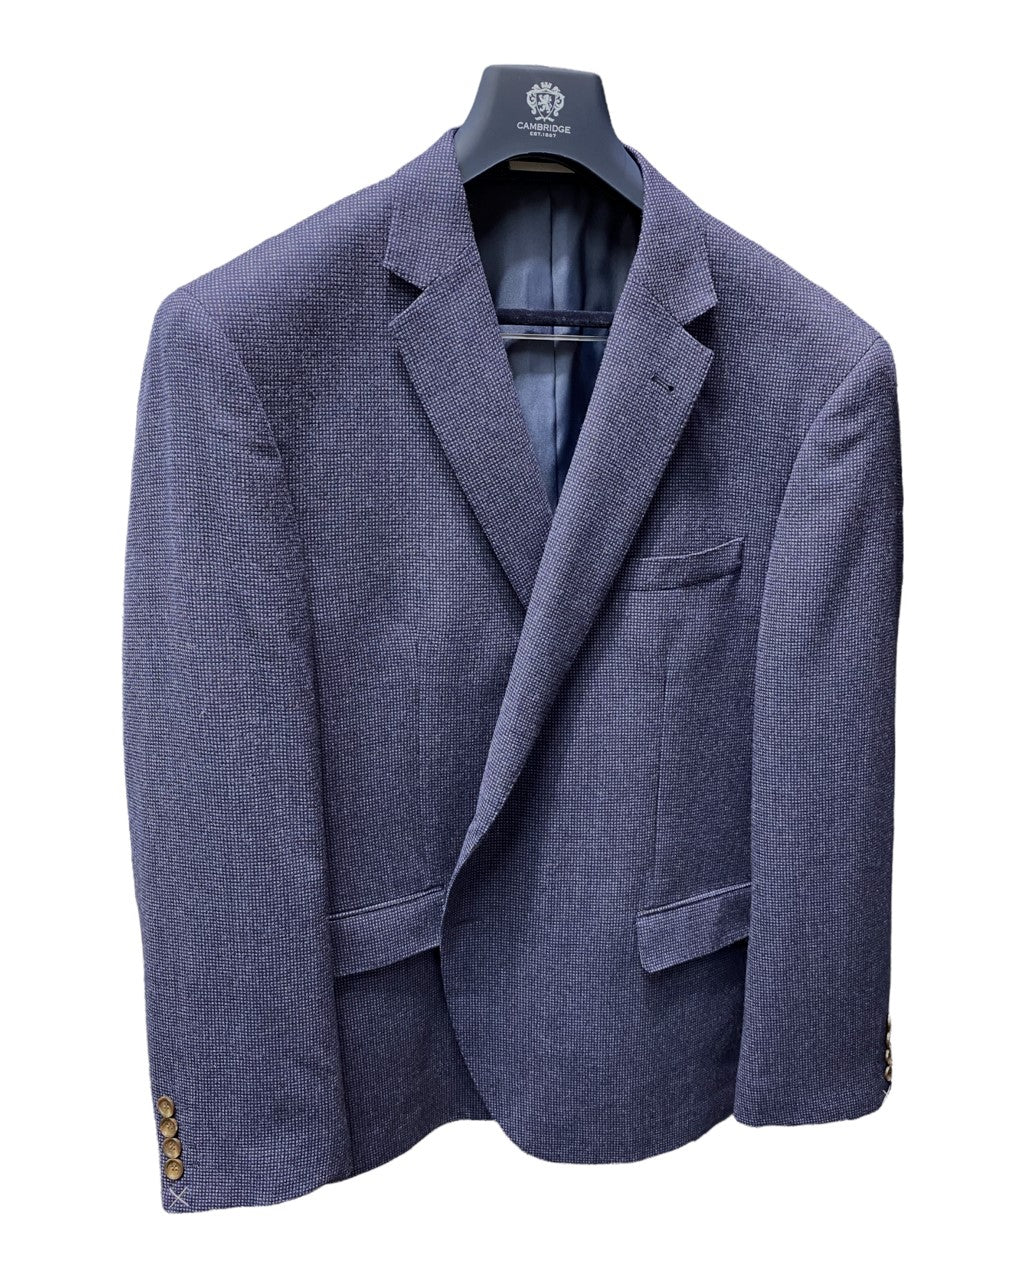 Cambridge - Hawthorn Sports Jacket - Blue